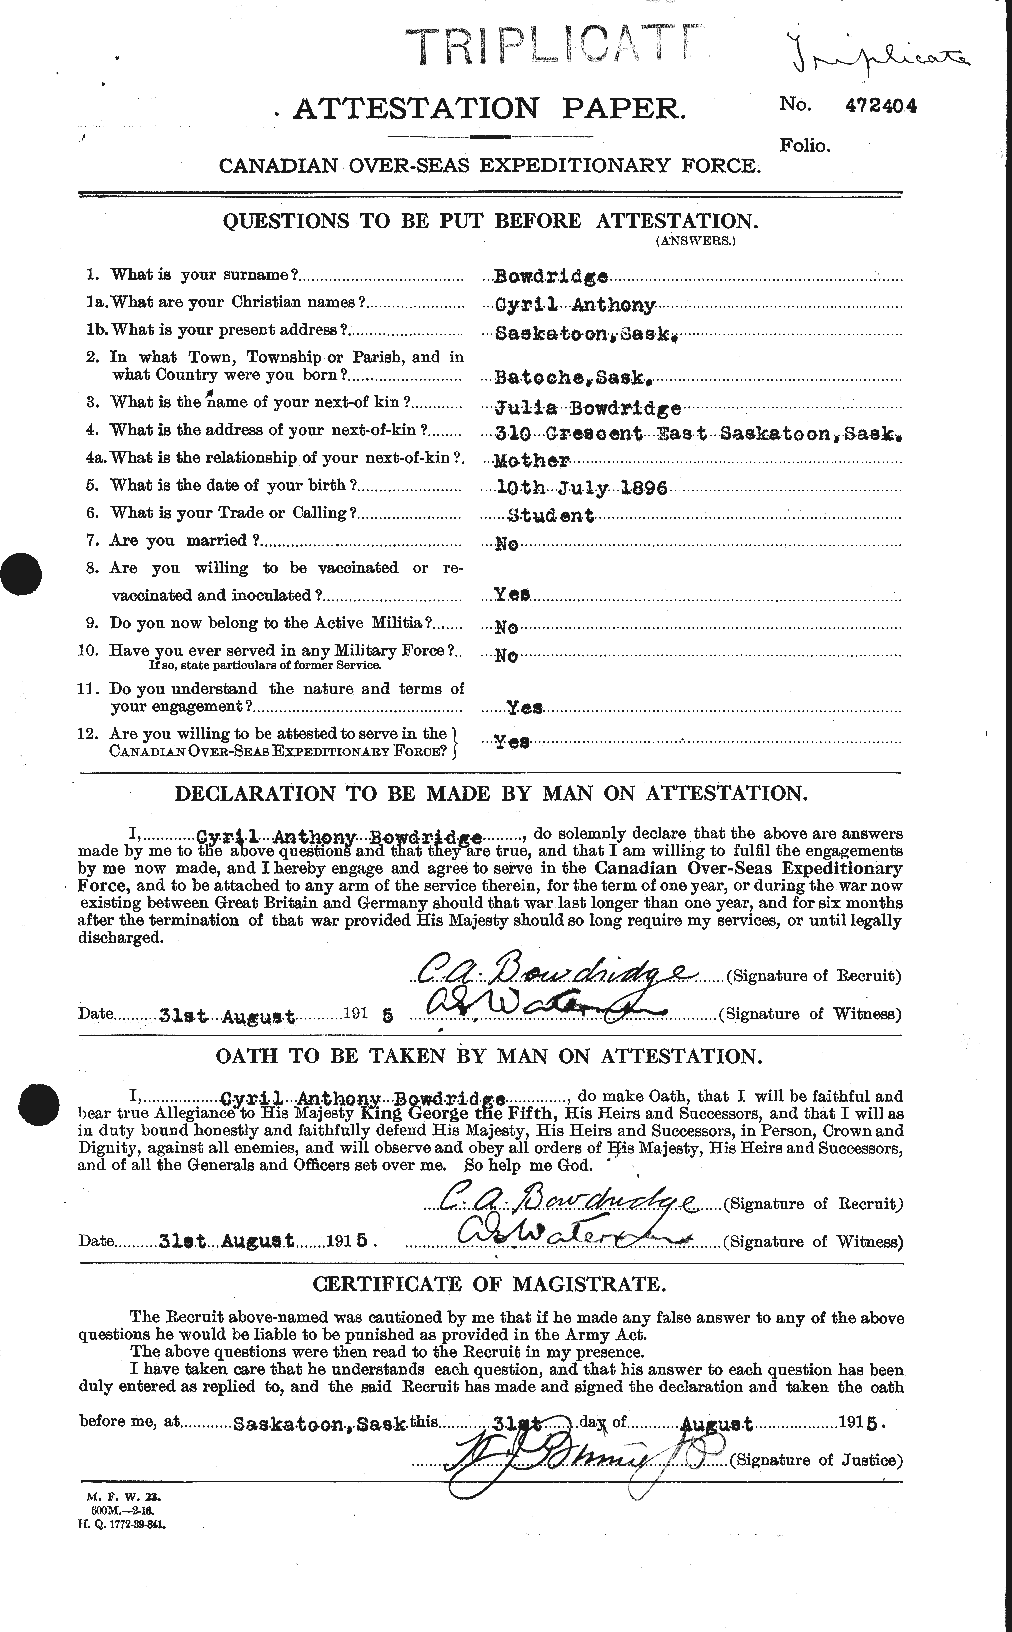 Dossiers du Personnel de la Première Guerre mondiale - CEC 255315a